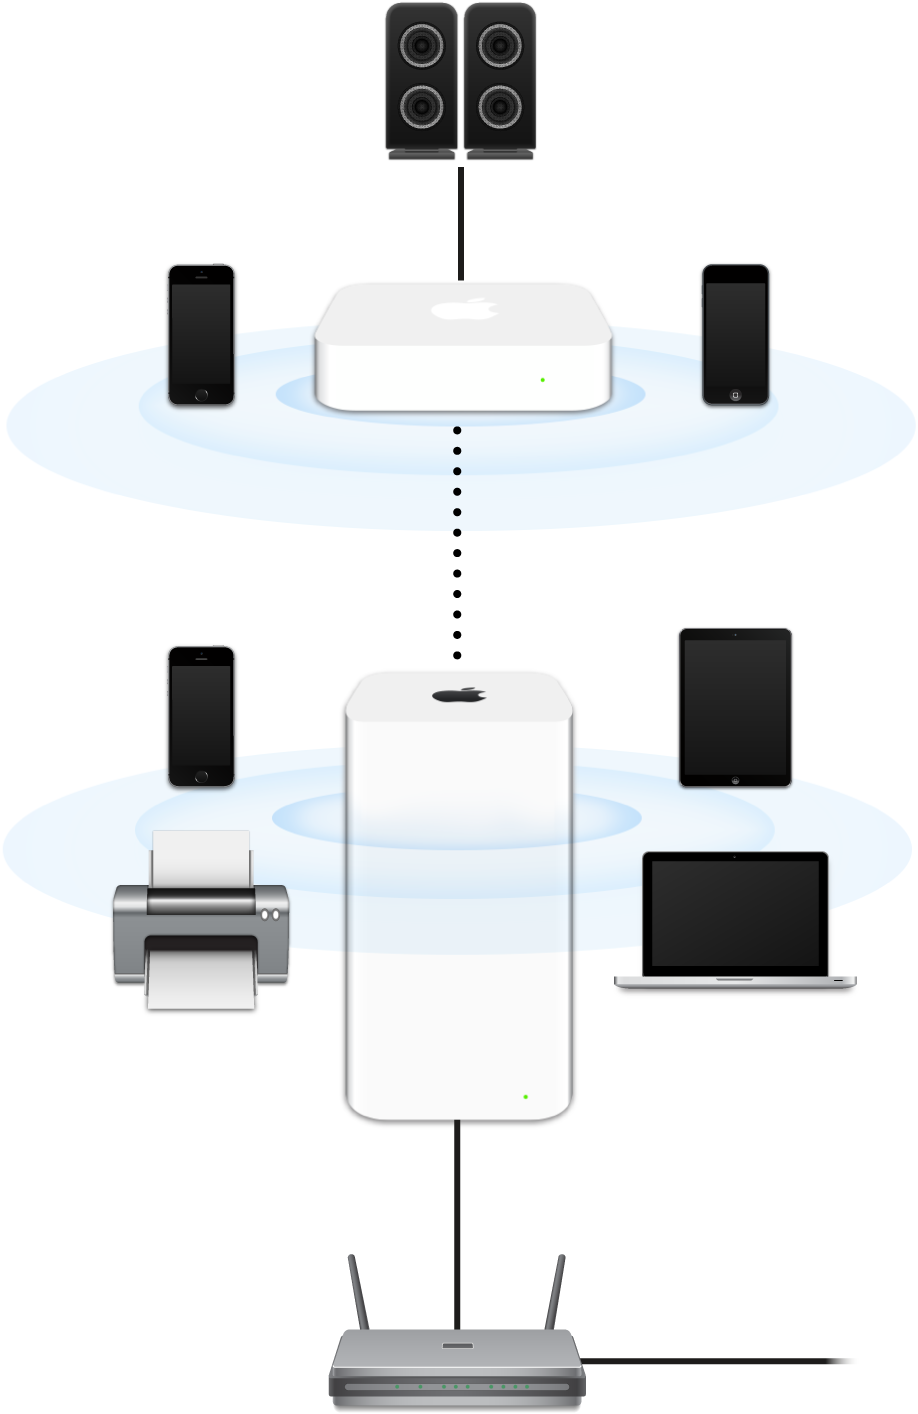 Ein erweitertes Netzewrk mit einer AirPort Extreme- und einer AirPort Express-Basisstation, die mit einerm Modem verbunden sind und das Signal an unterschiedliche Geräte übertragen